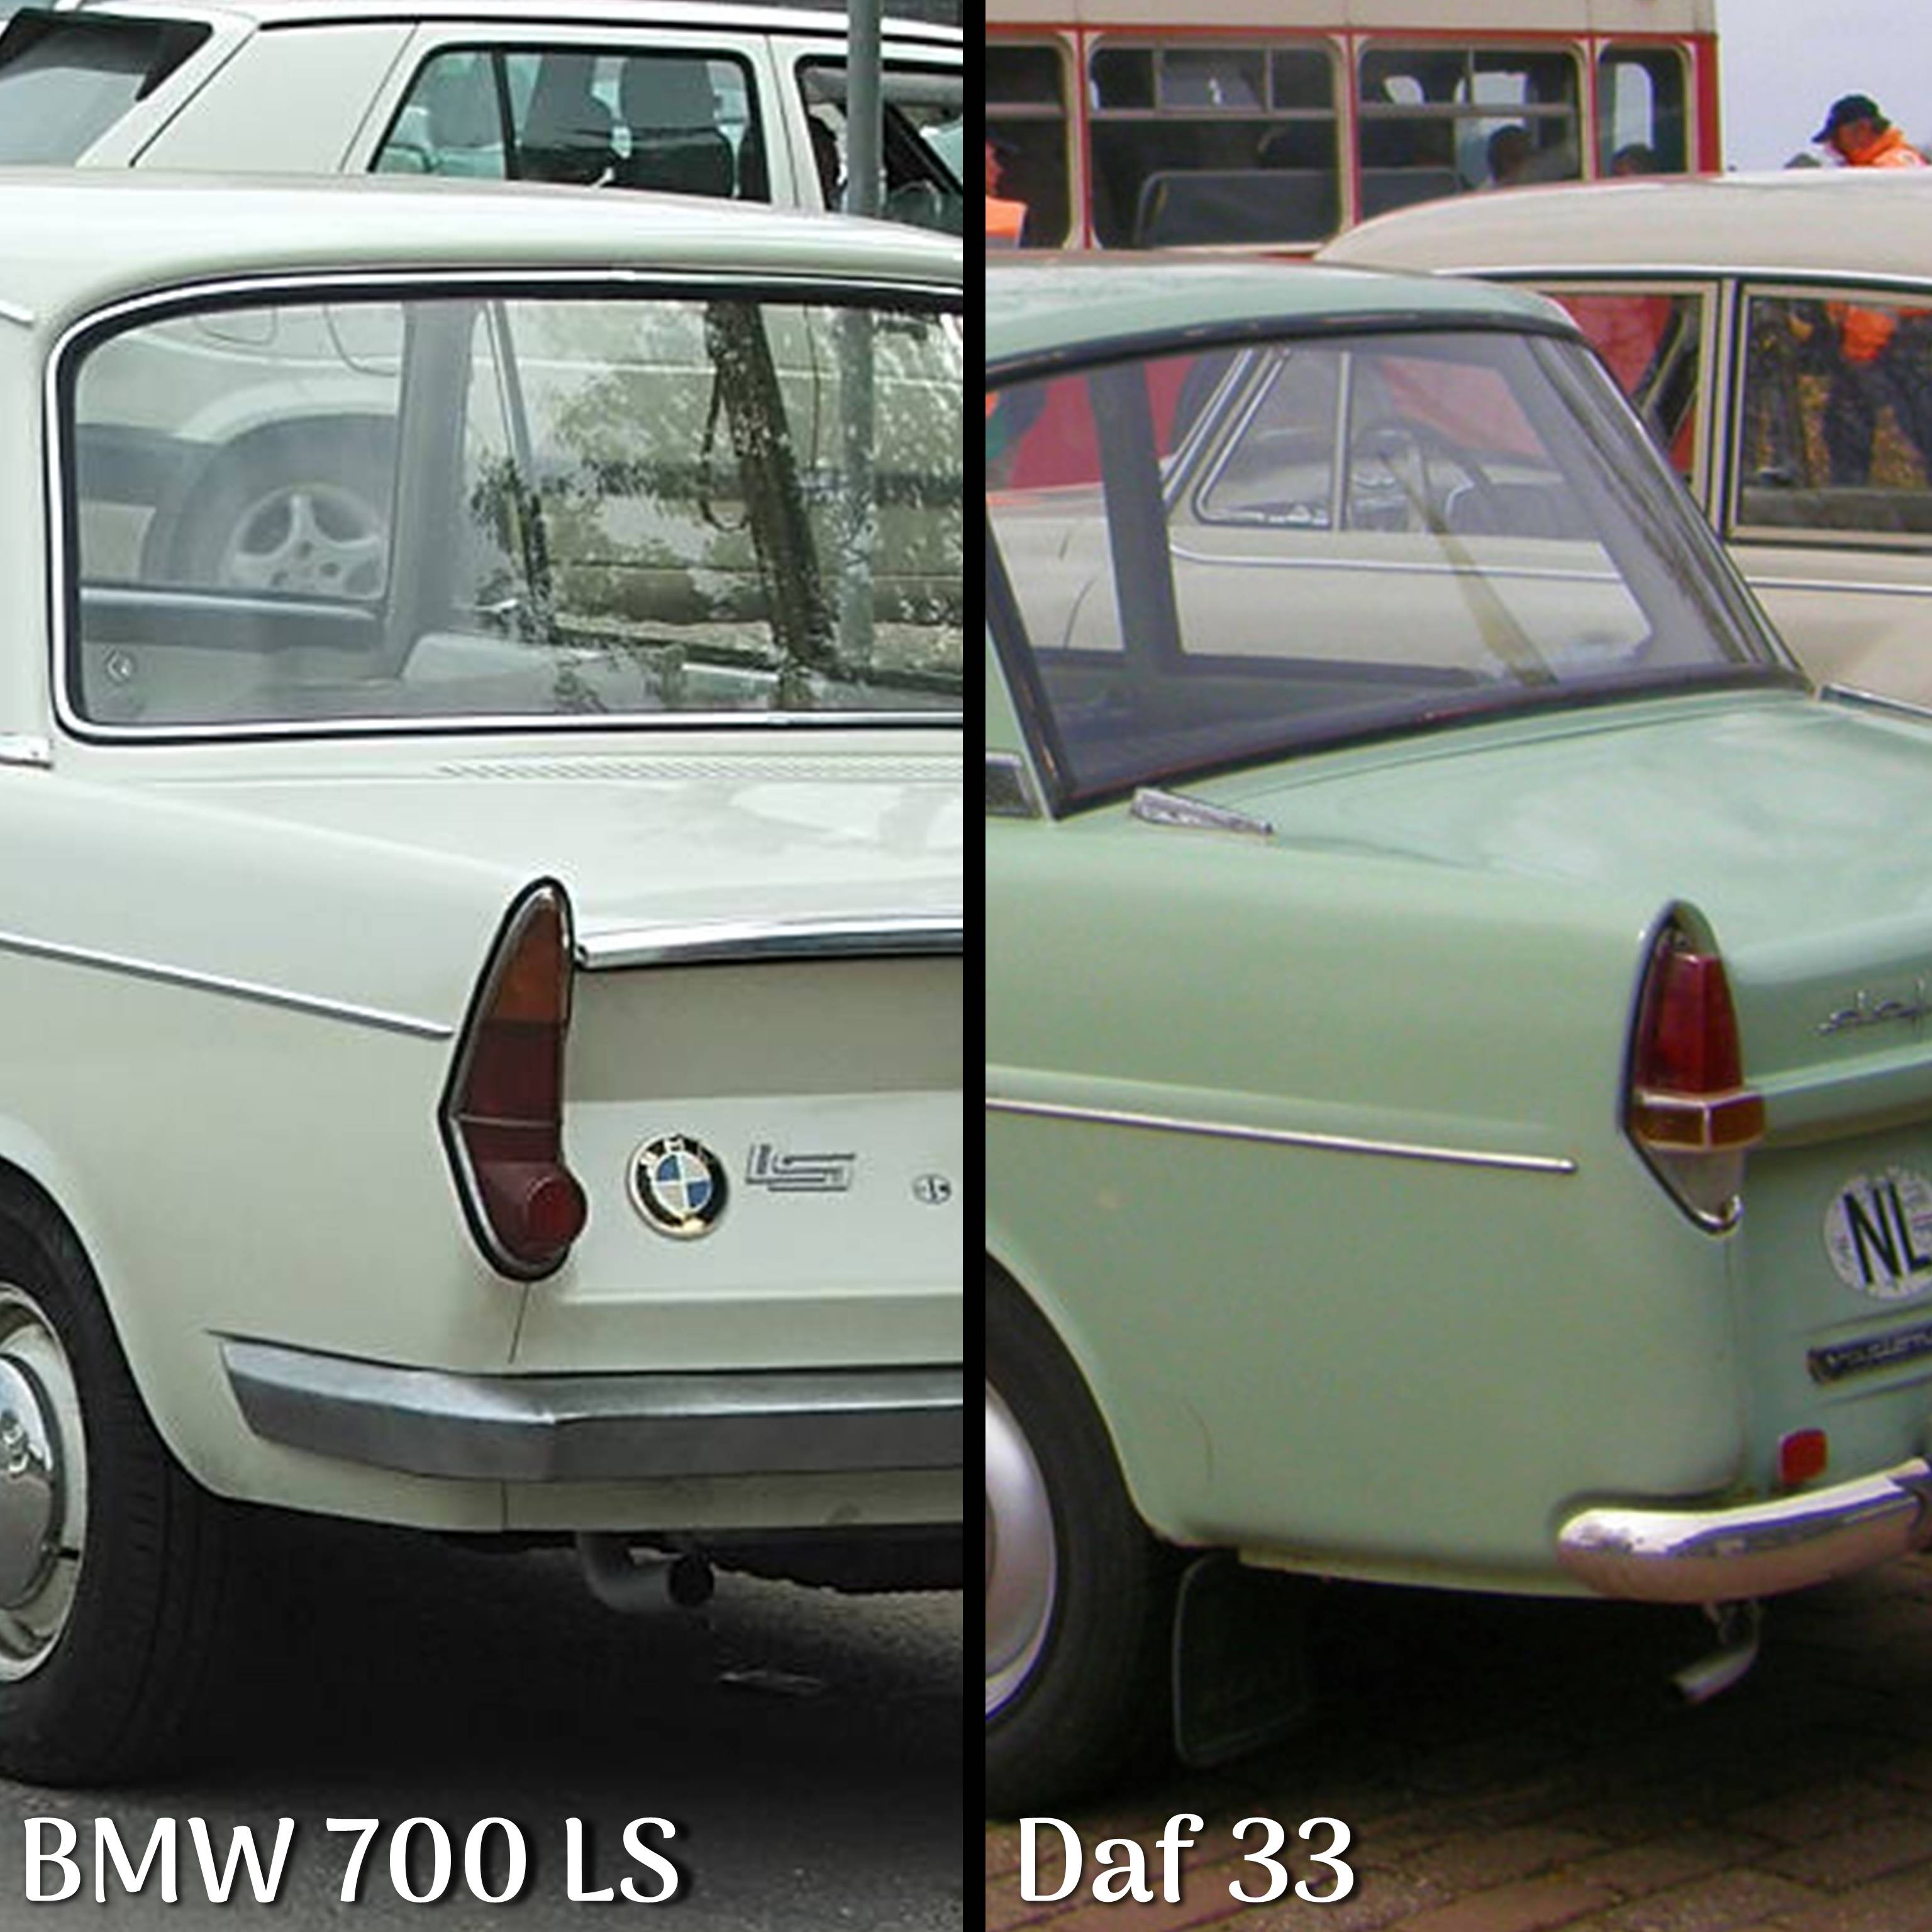 BMW 700 LS en Daf 33